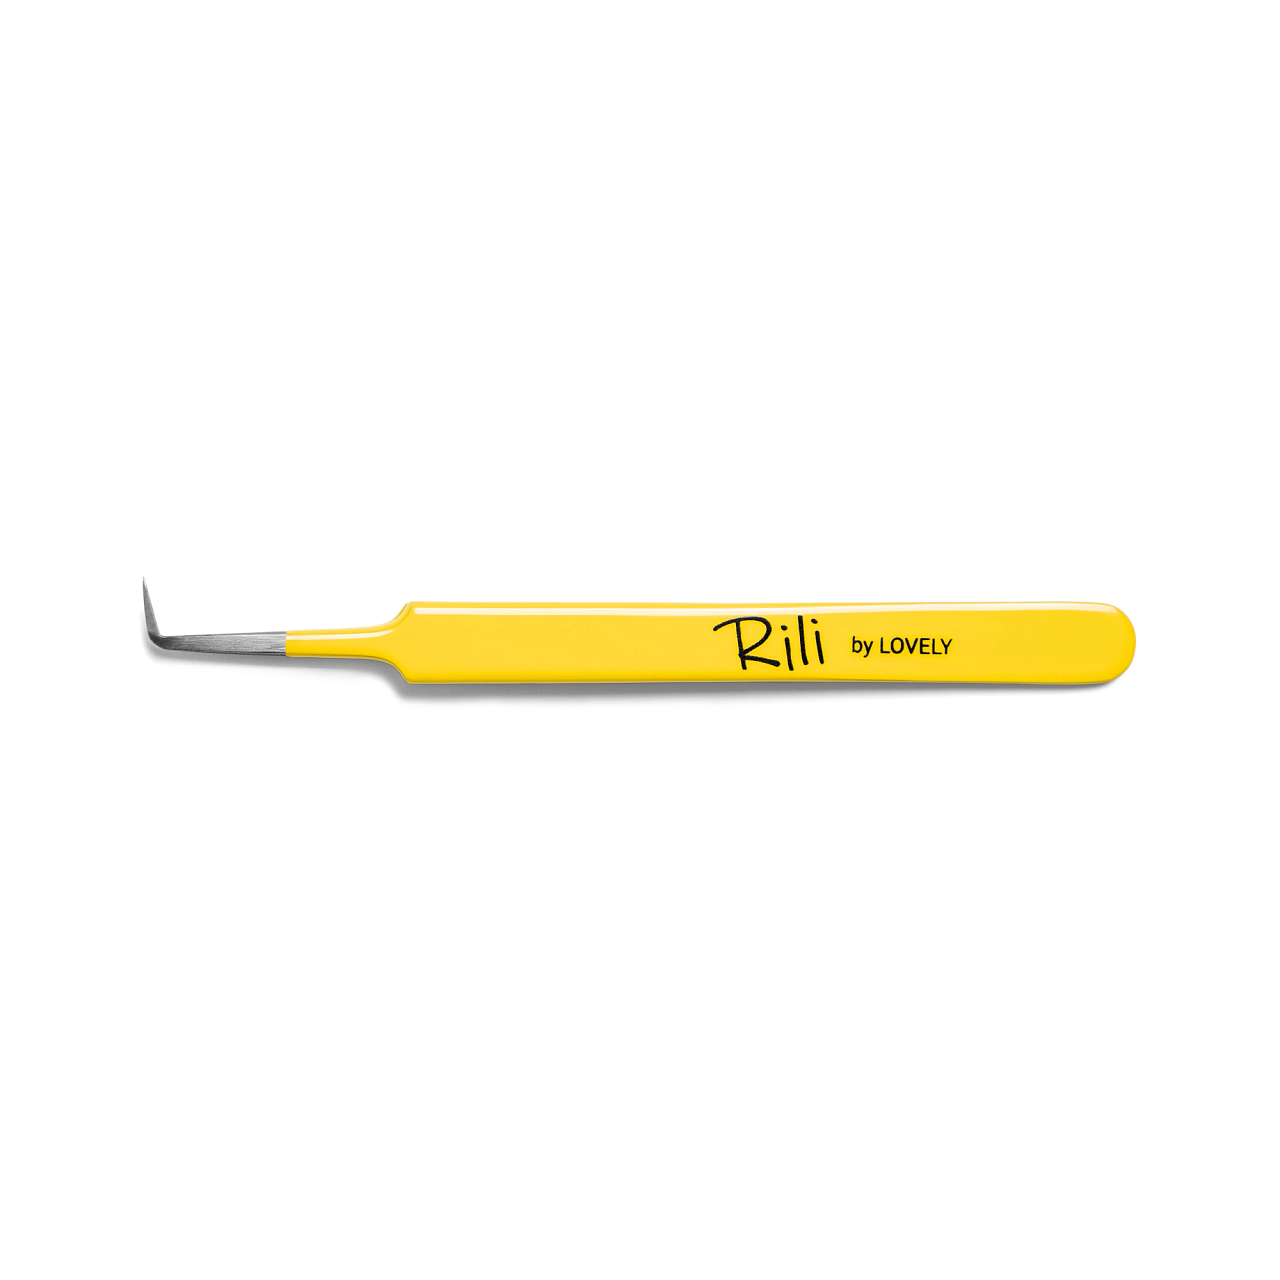 Пинцет для наращивания Rili тип Г 7 мм Yellow line пинцет для наращивания rili тип l 5мм yellow line